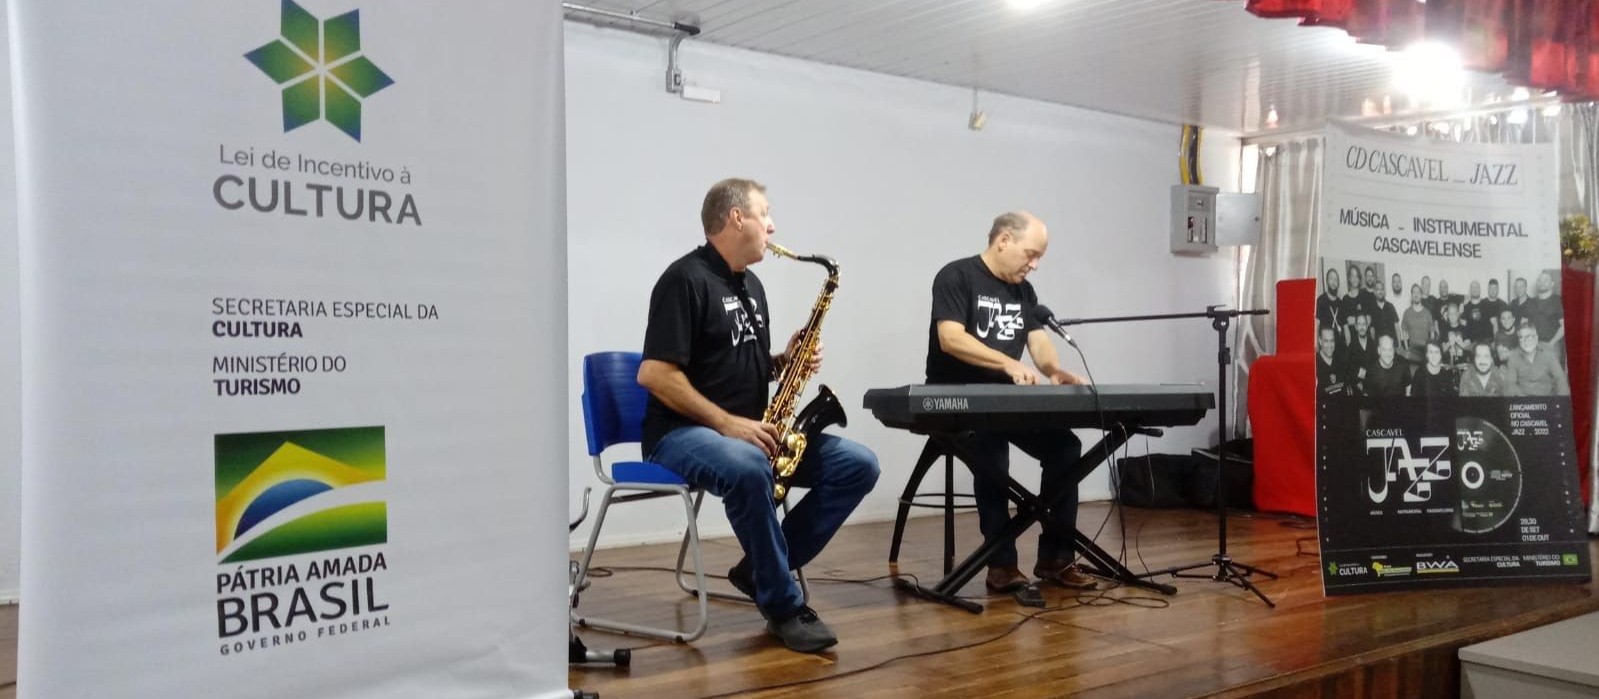 Cascavel Jazz leva música e palestras para escolas estaduais de Cascavel e região